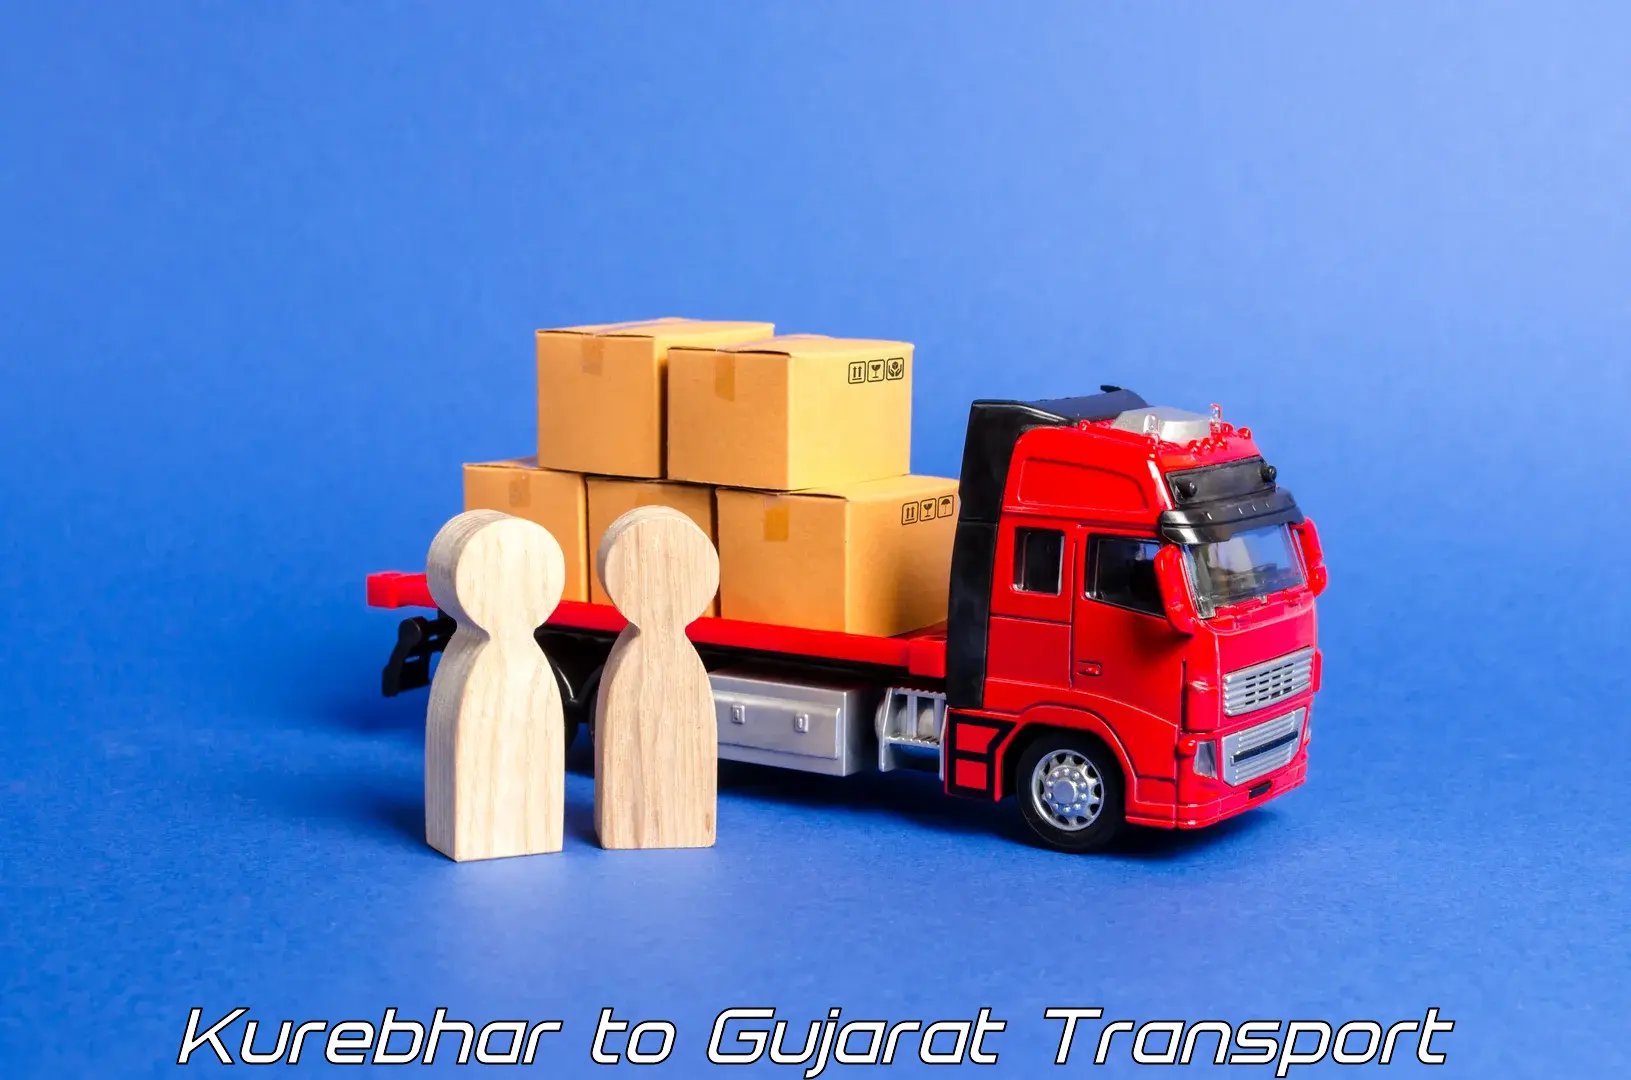 Truck transport companies in India Kurebhar to Dharmaram